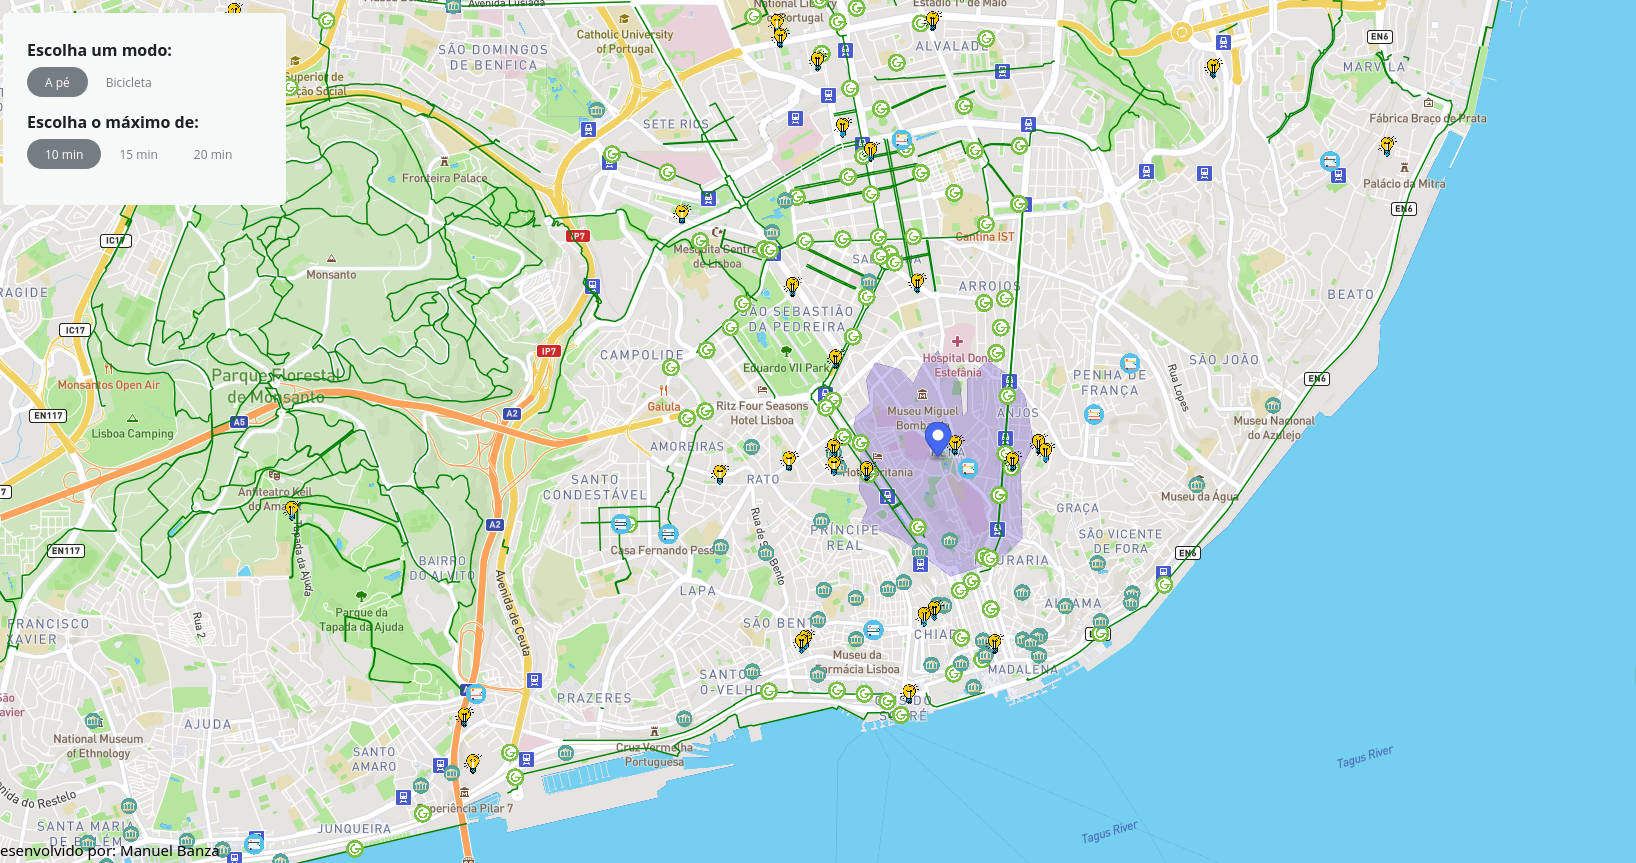 Lisboa como cidade dos 15 minutos - Um mapa interativo